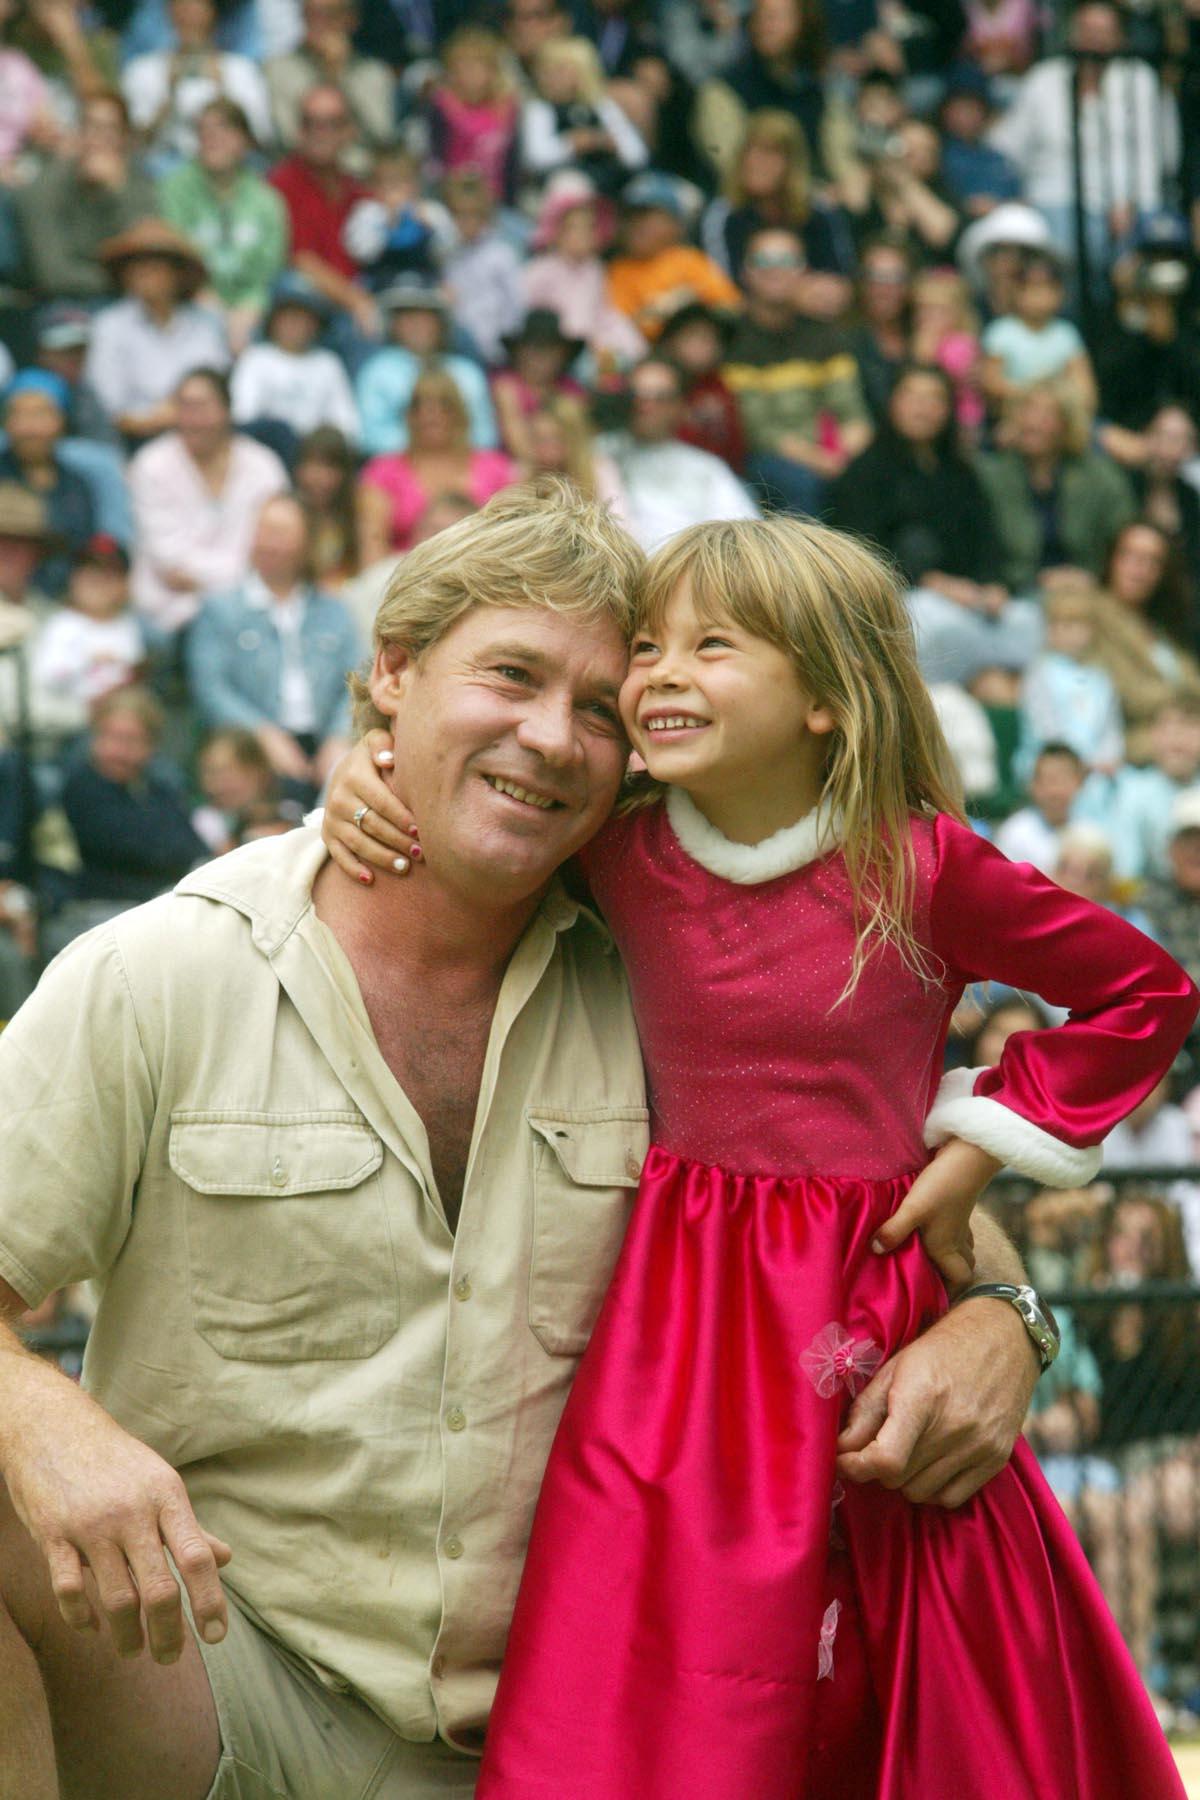 Steven Irwin retro shots with son Robert and daughter Bindi Irwin